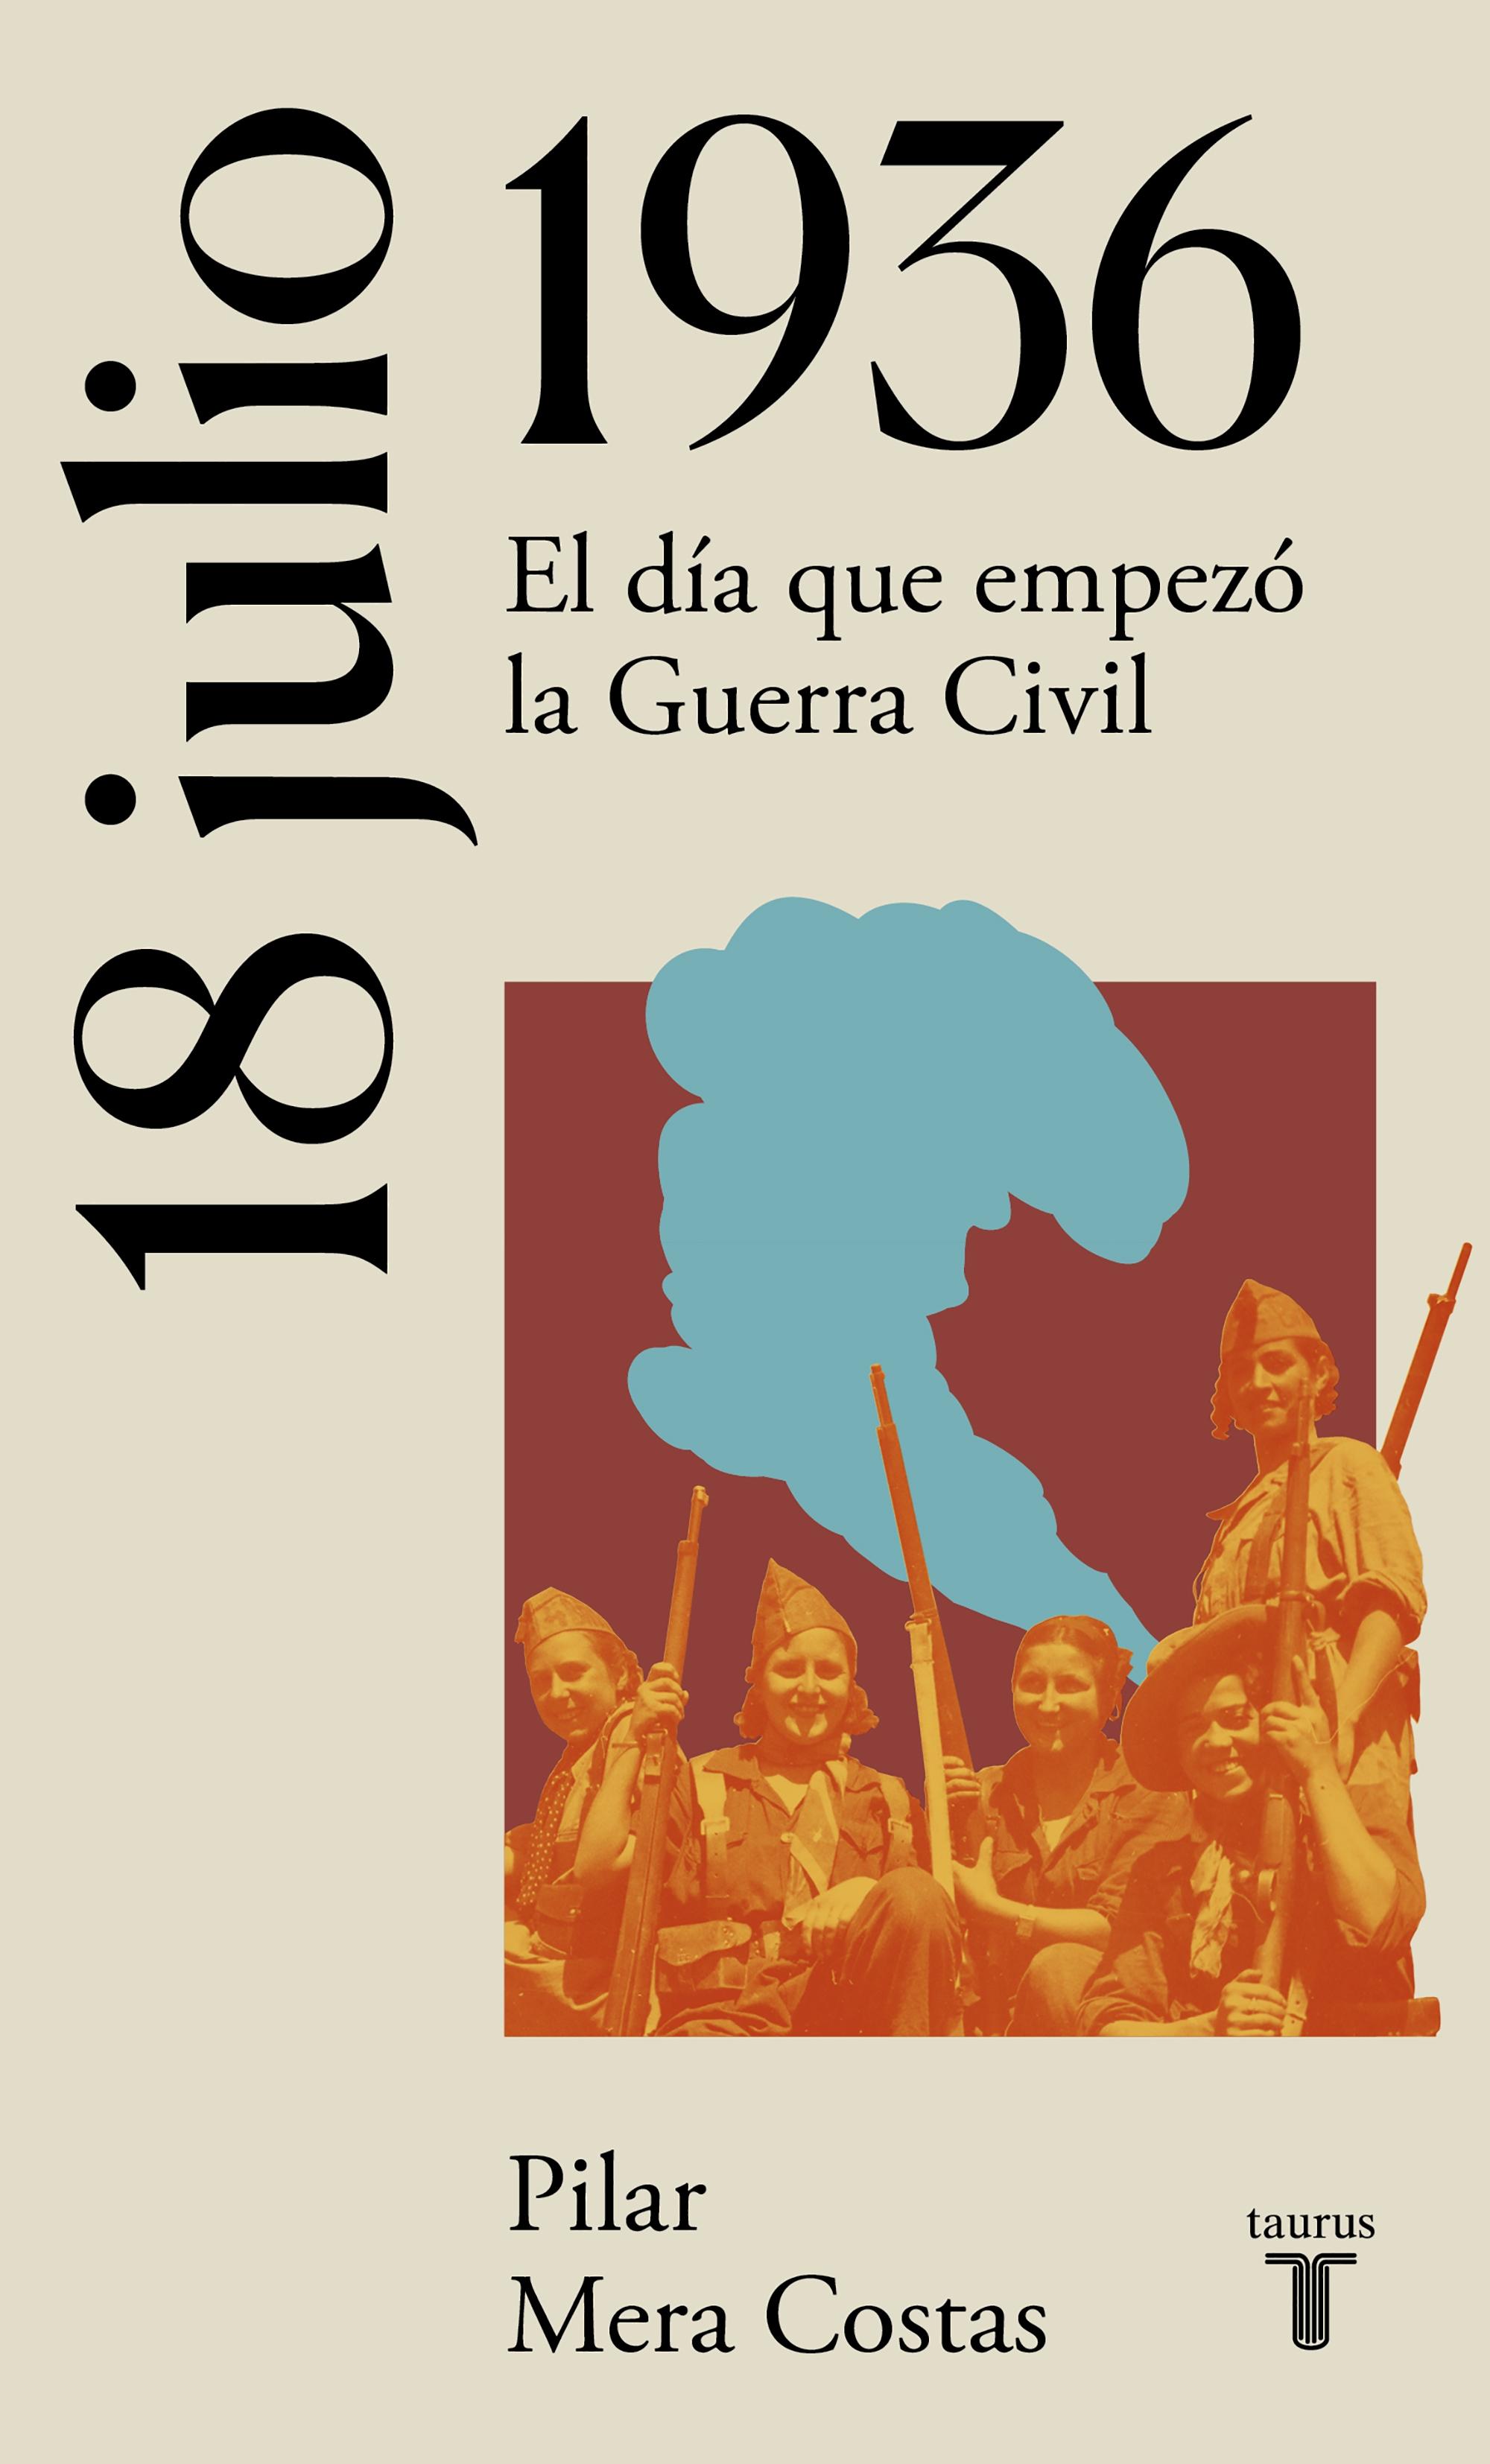 18 de Julio de 1936 "Hacia la Guerra Civil Española". 